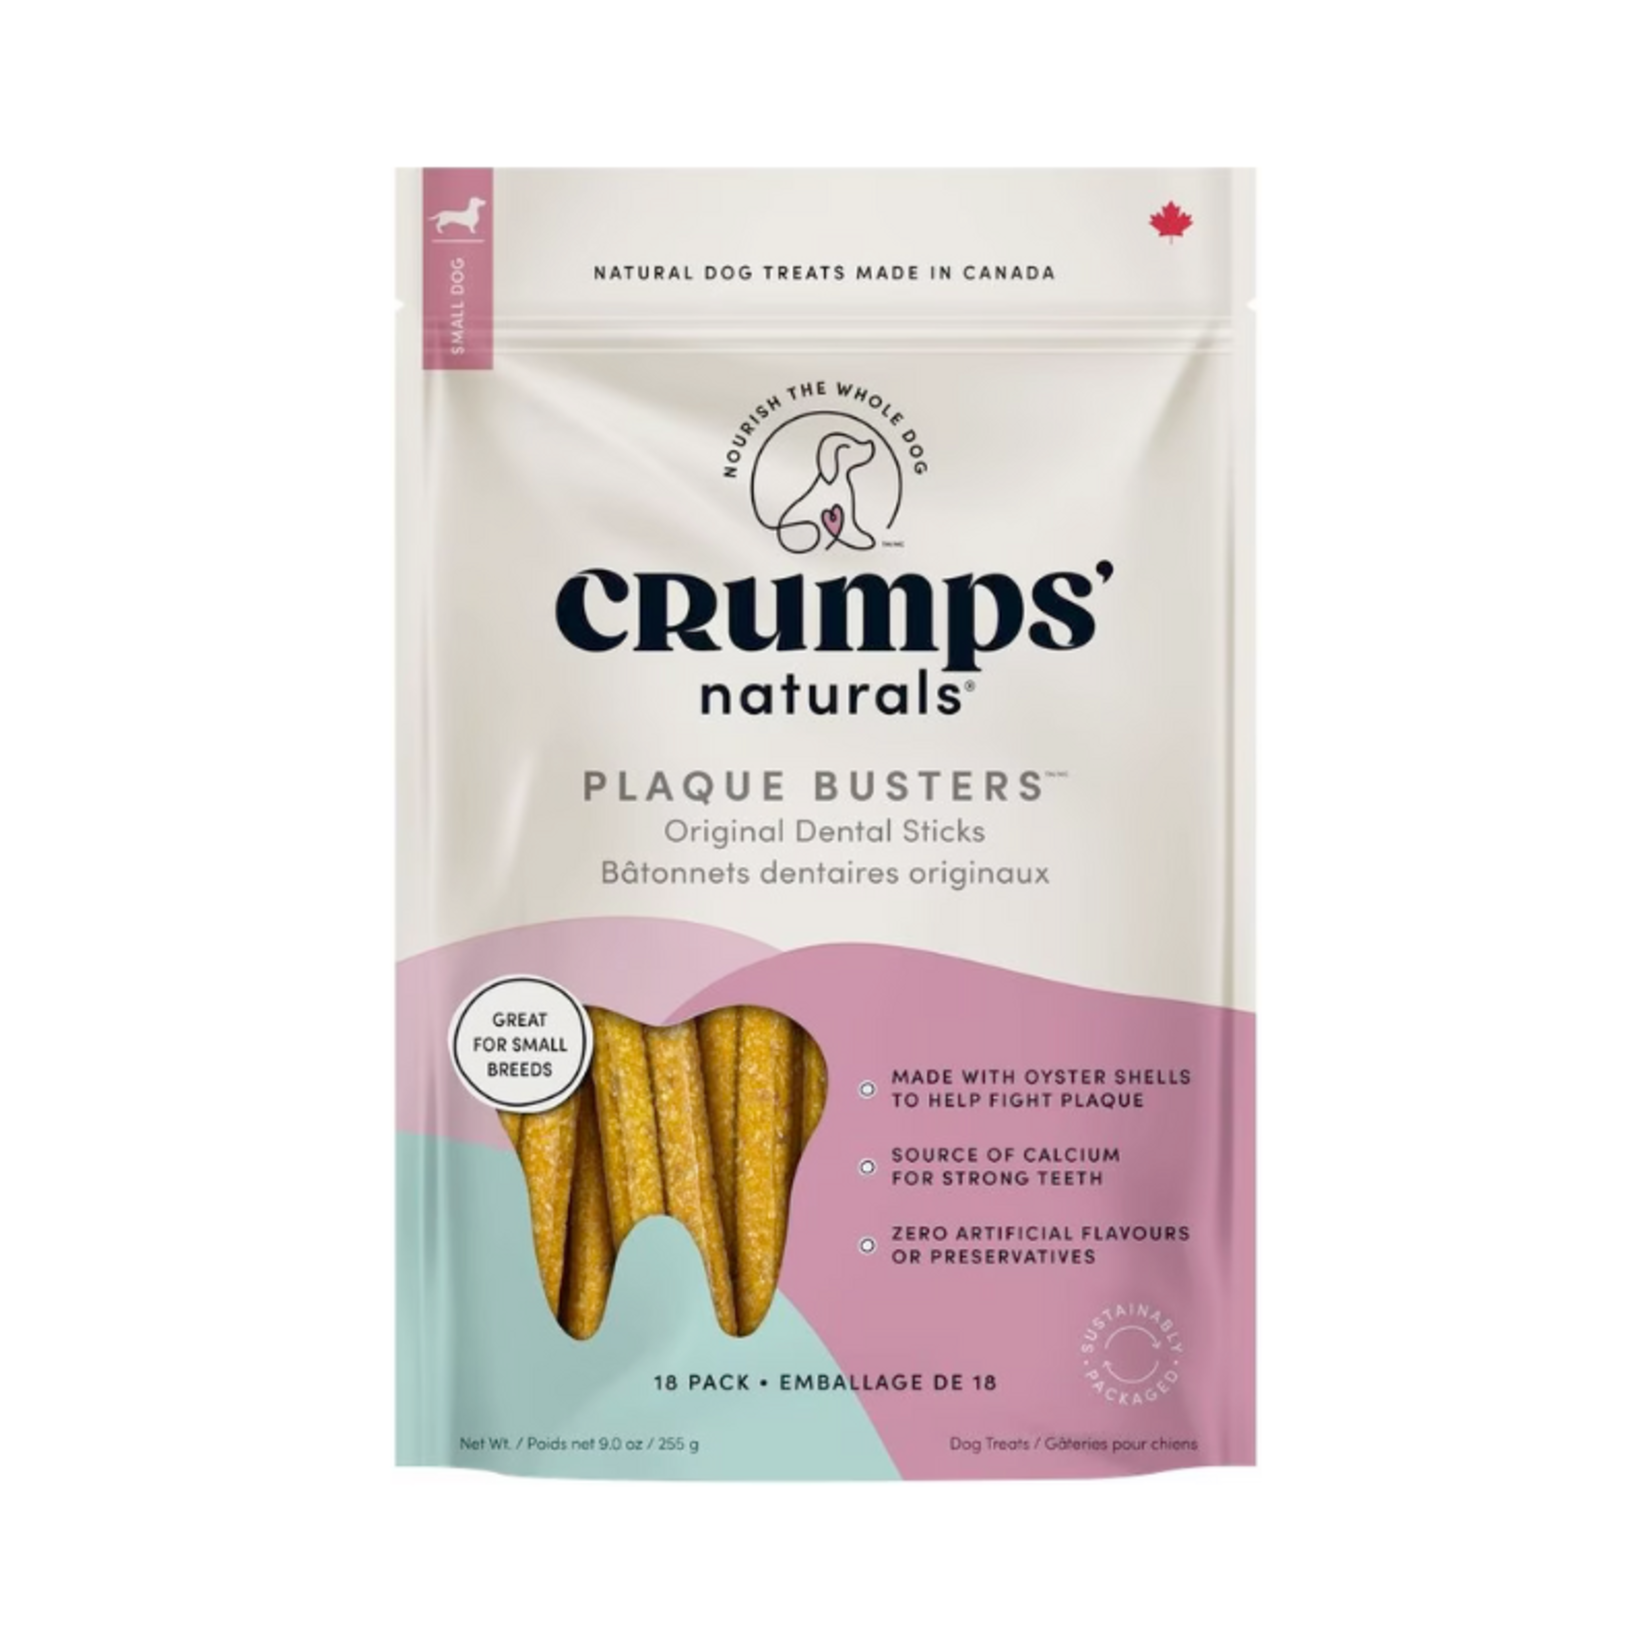 Crumps Naturals 10 pack - 7” Dental Treats - Plaque Busters - Crumps Naturals